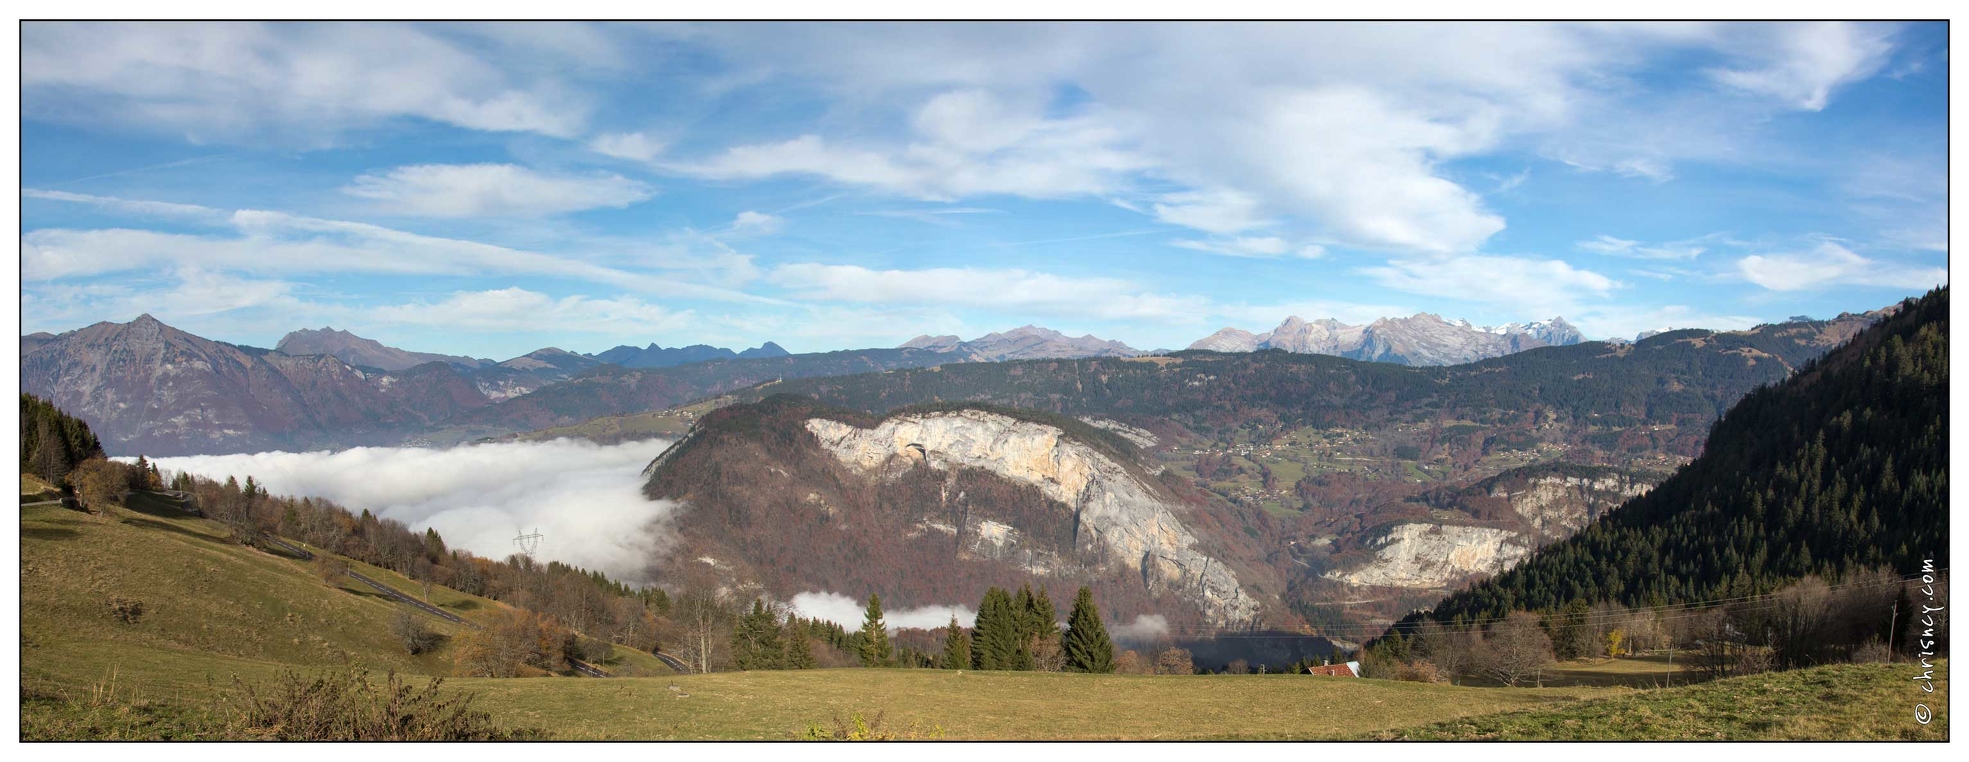 20151112-23_4573-Romme_vue_sur_Alpes_Suisses_pano.jpg